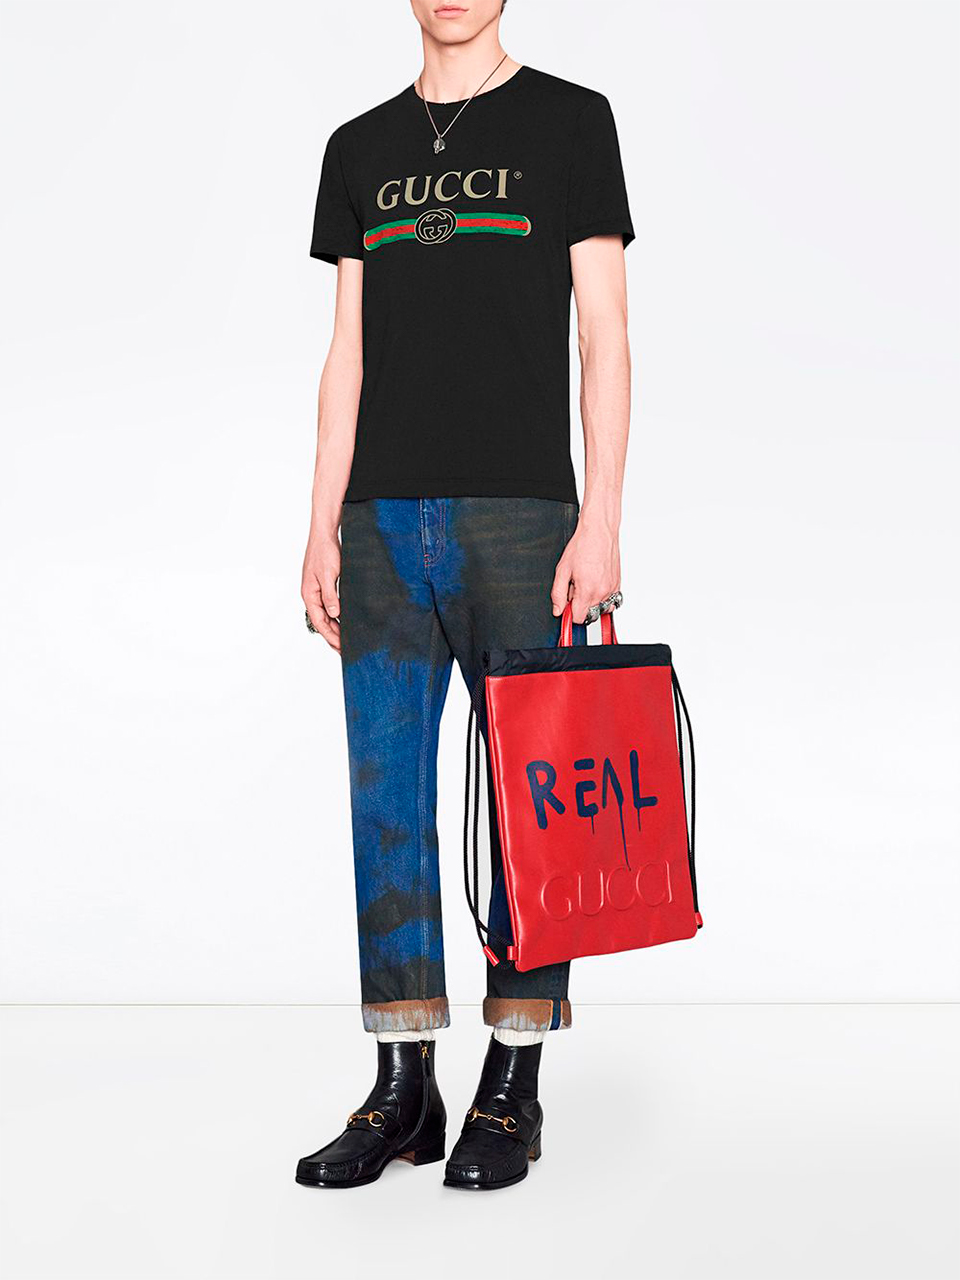 Imagem de: Camiseta Gucci Preta com Logo